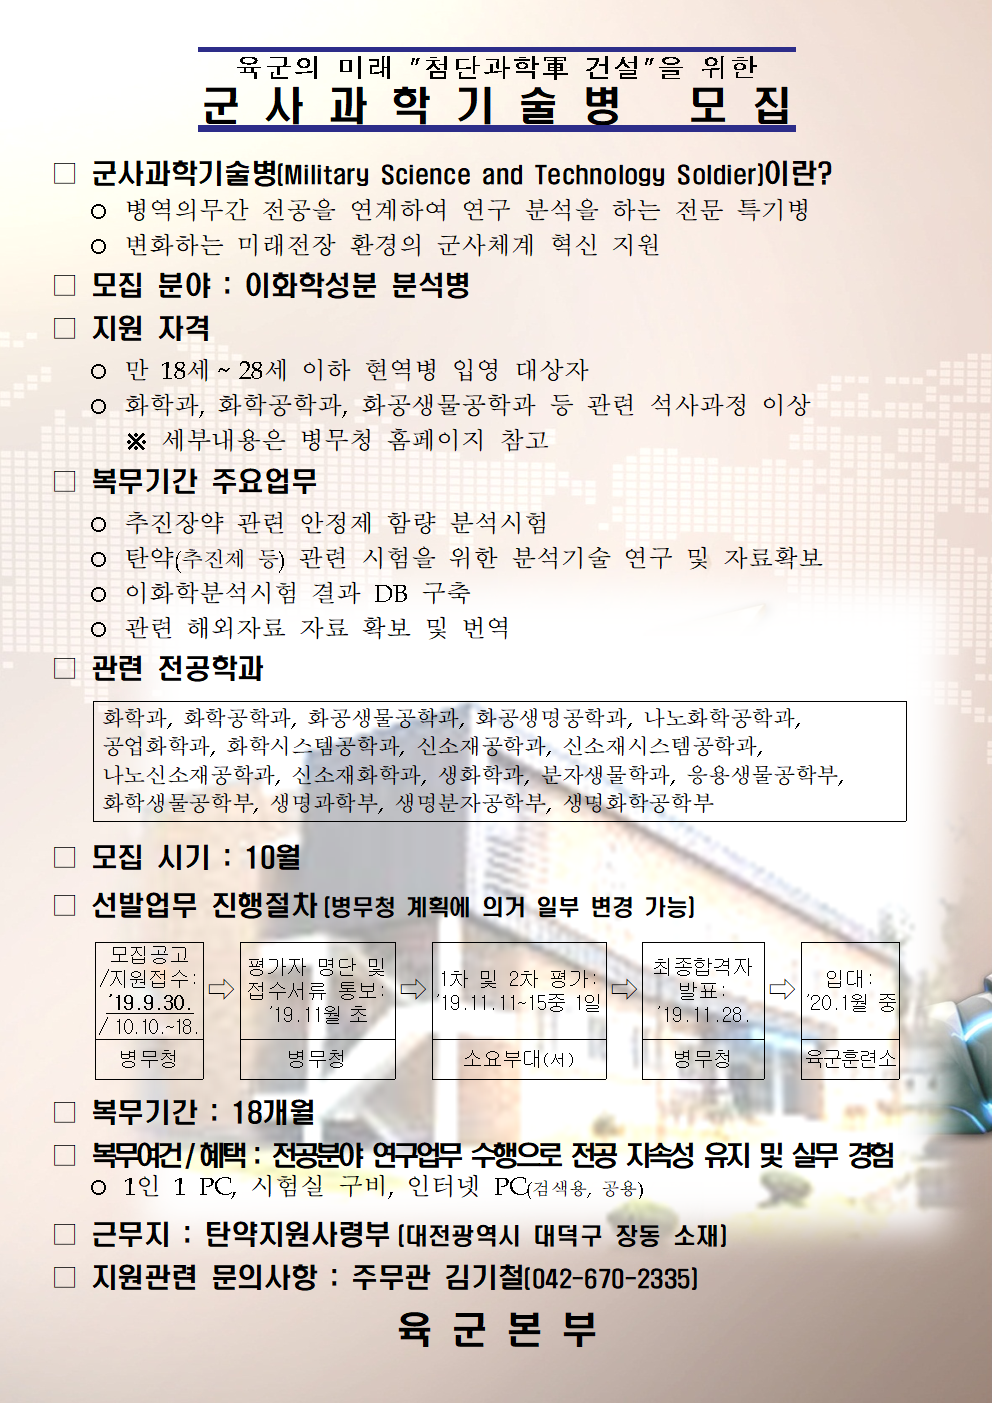 군사과학기술병 홍보자료003.png